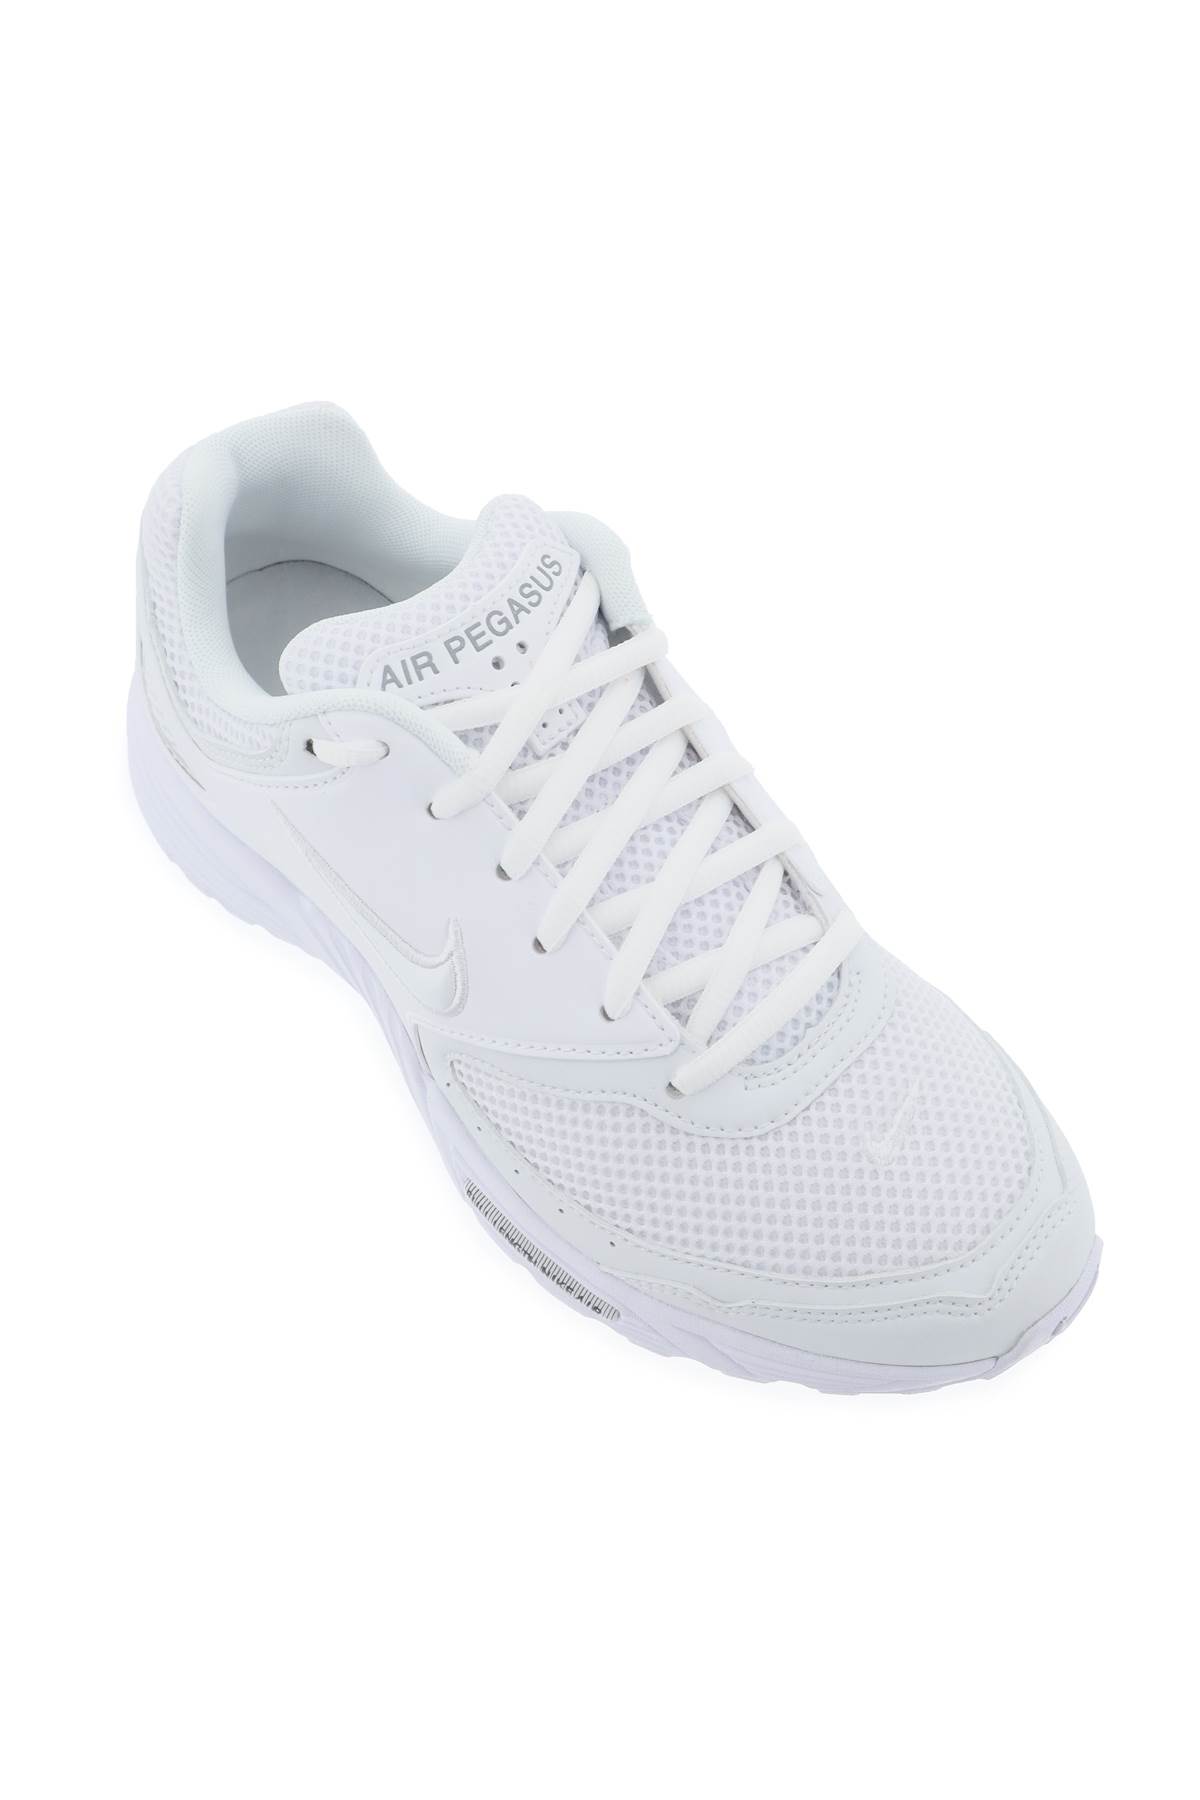 Shop Comme Des Garçons Homme Deux Air Pegasus 2005 Sp Sneakers X Nike In White (white)